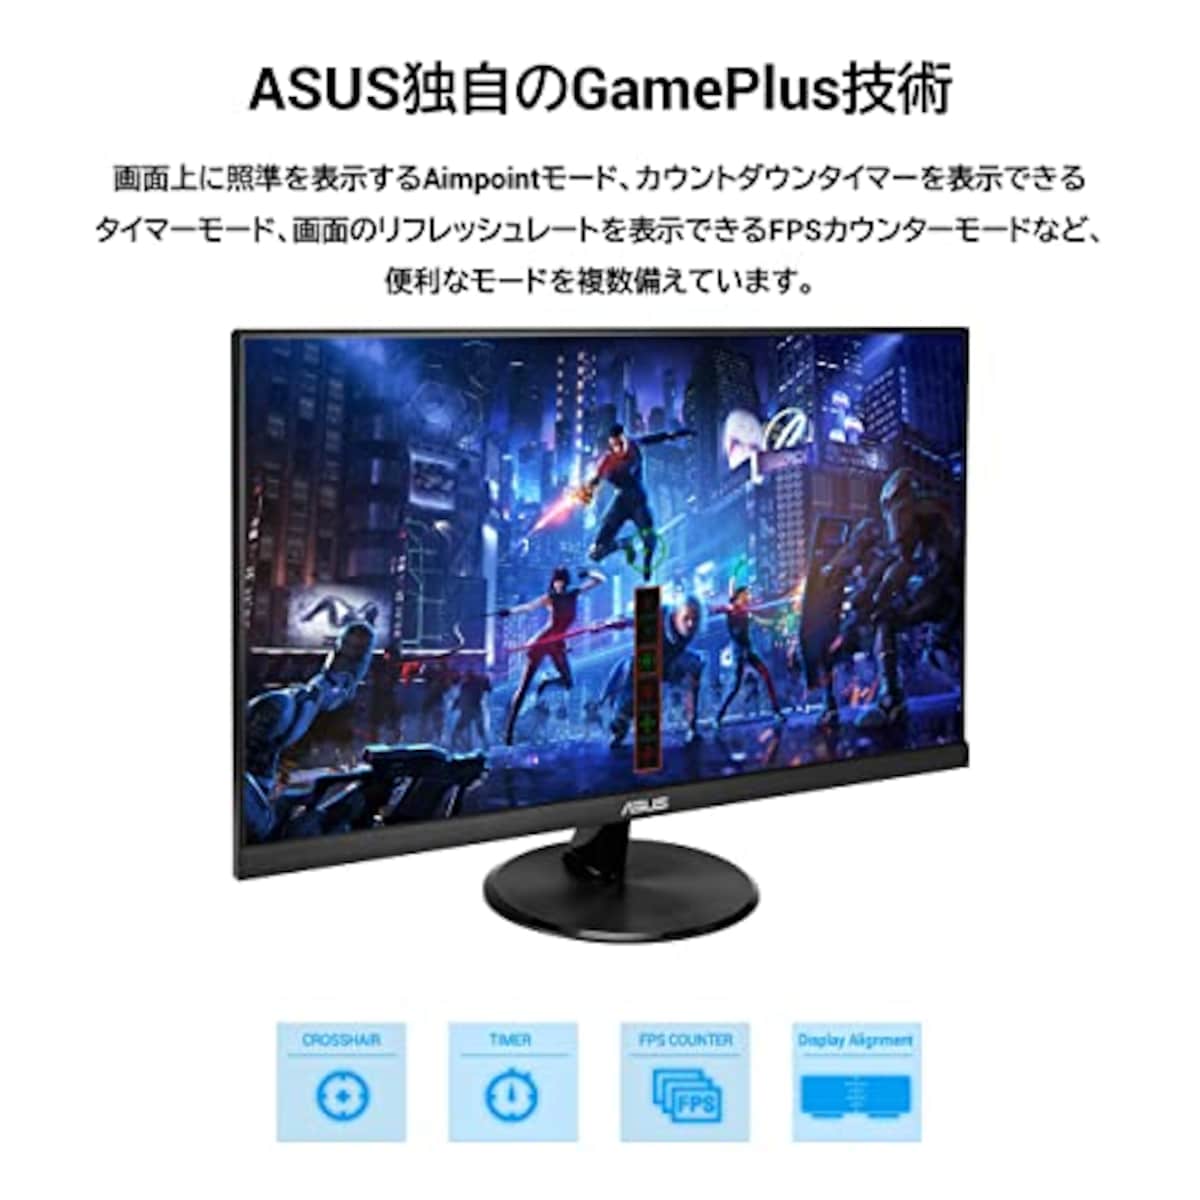  【Amazon.co.jp限定】 ASUS ゲーミングモニター 75Hz 23.8インチ モニター IPS FHD 1ms HDMI1.4(x2) スピーカー VP249HV画像4 